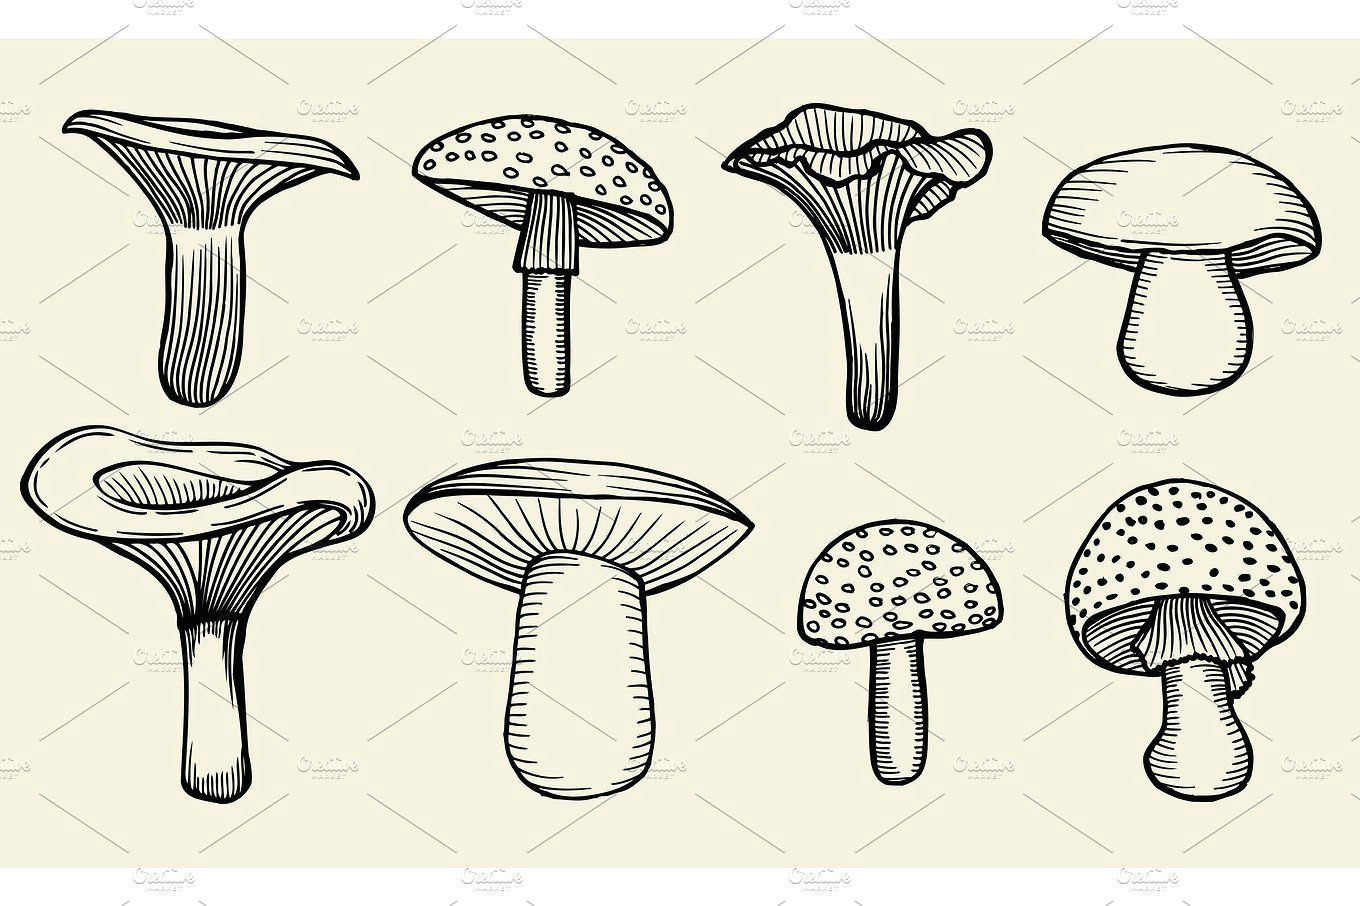 Easy Vintage Drawings Hand Drawn Vintage Mushrooms by Vector Videoartshop On